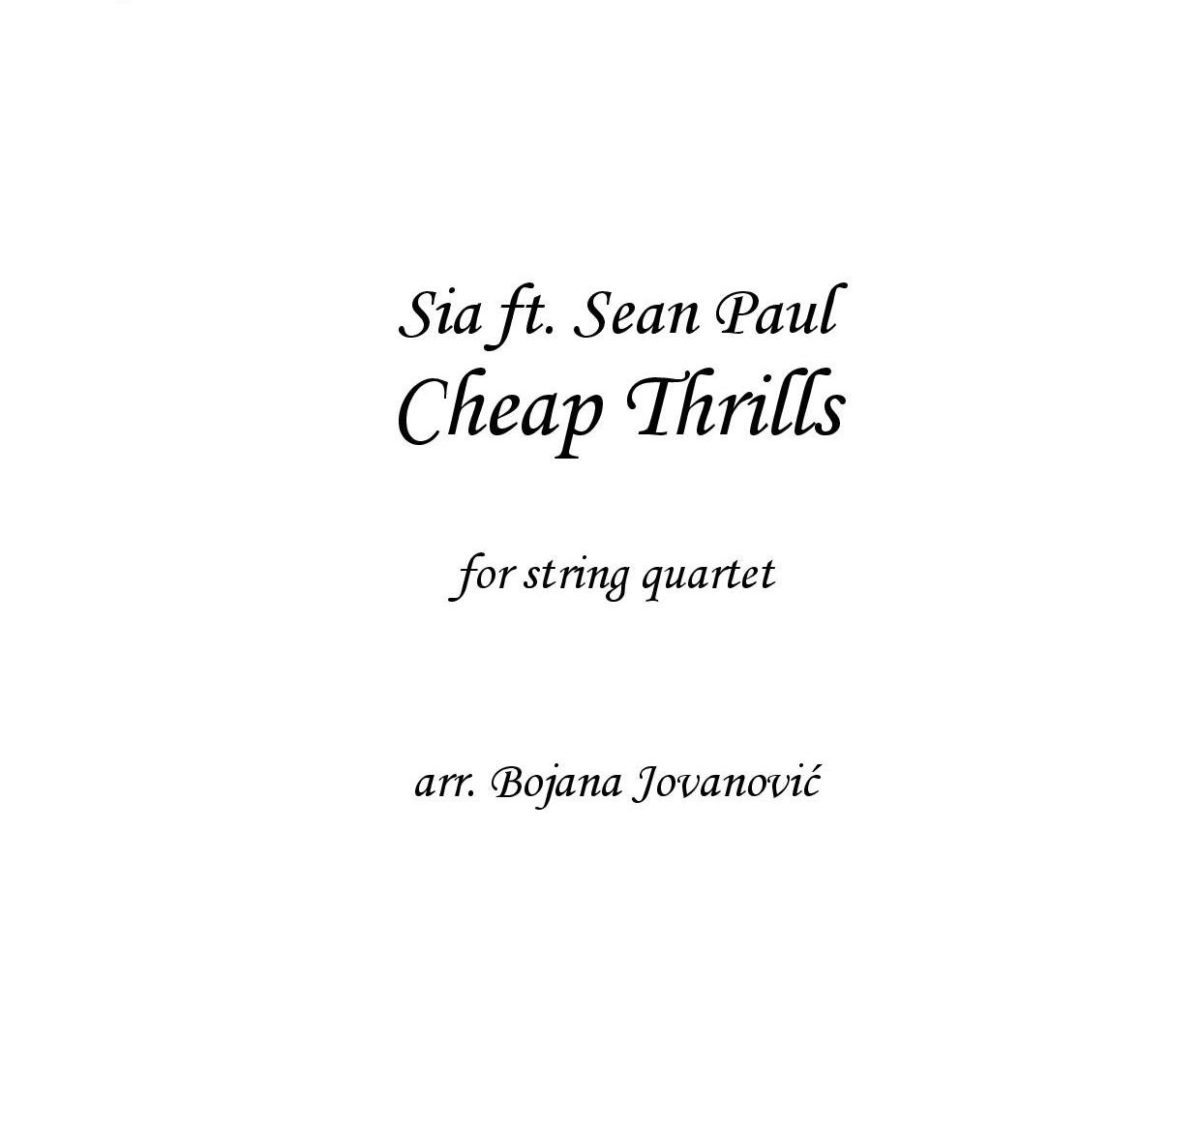 Cheap Thrills (Sia) - Sheet Music